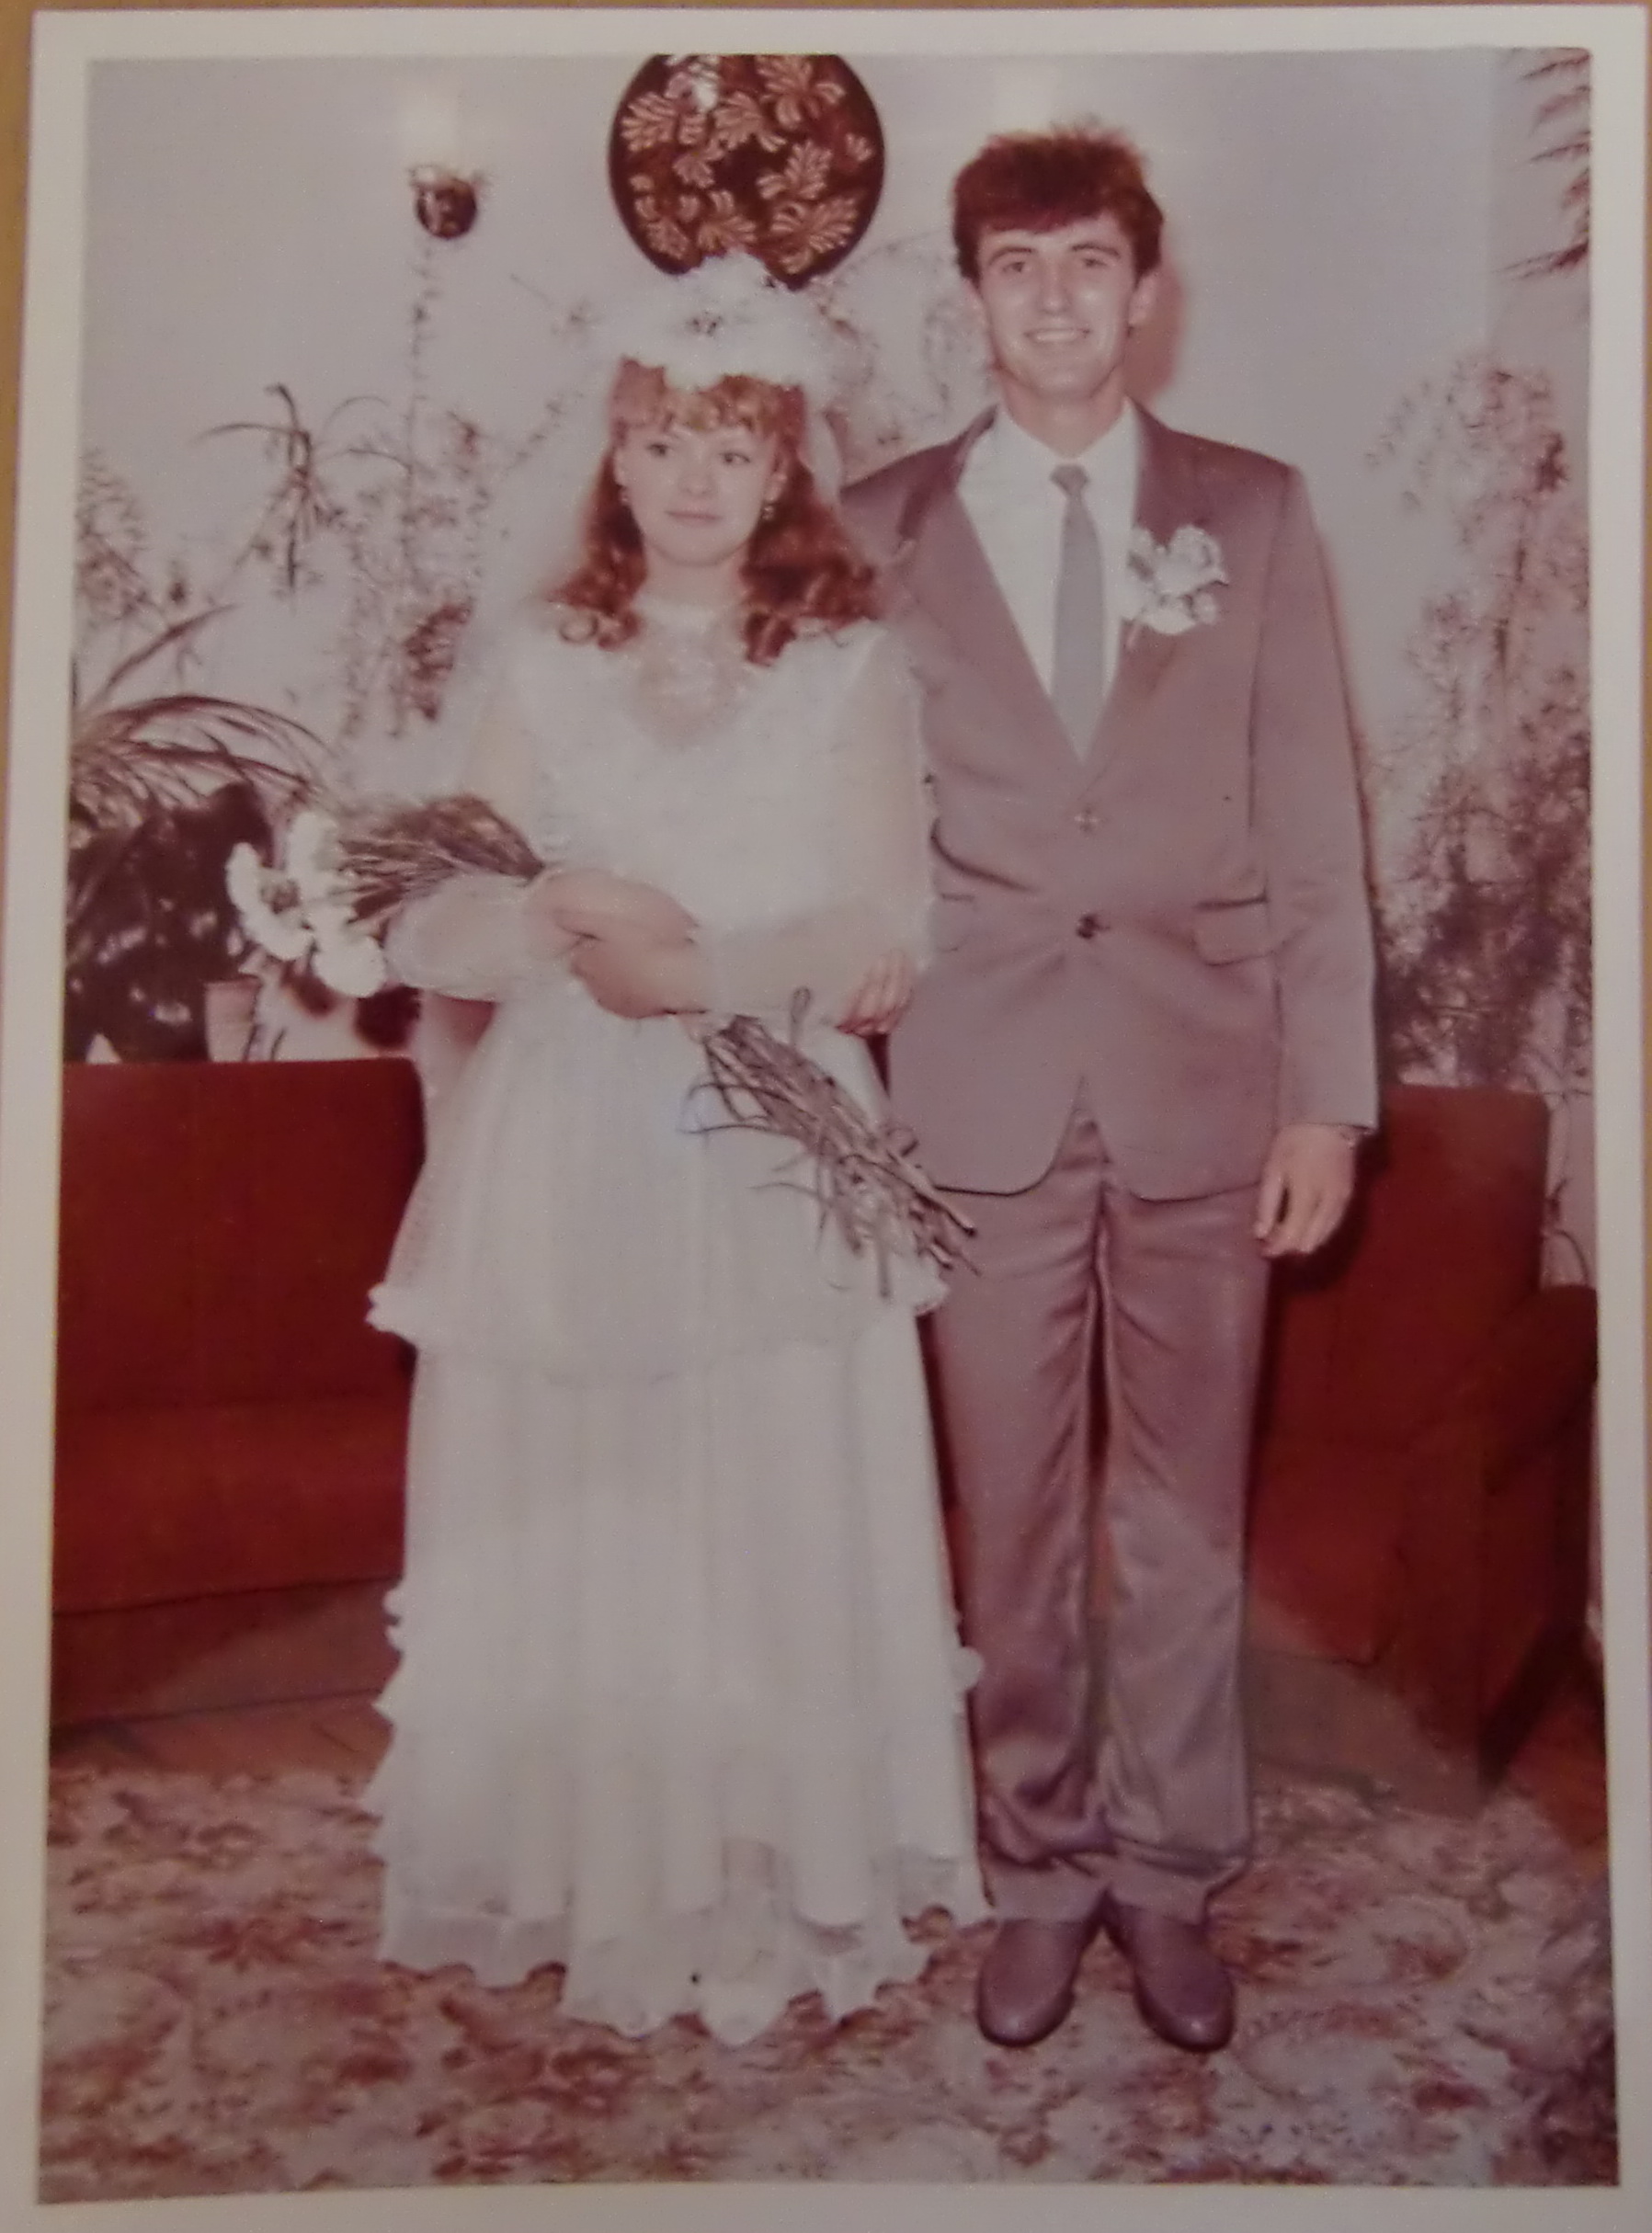 Свадебные платья 1988 года